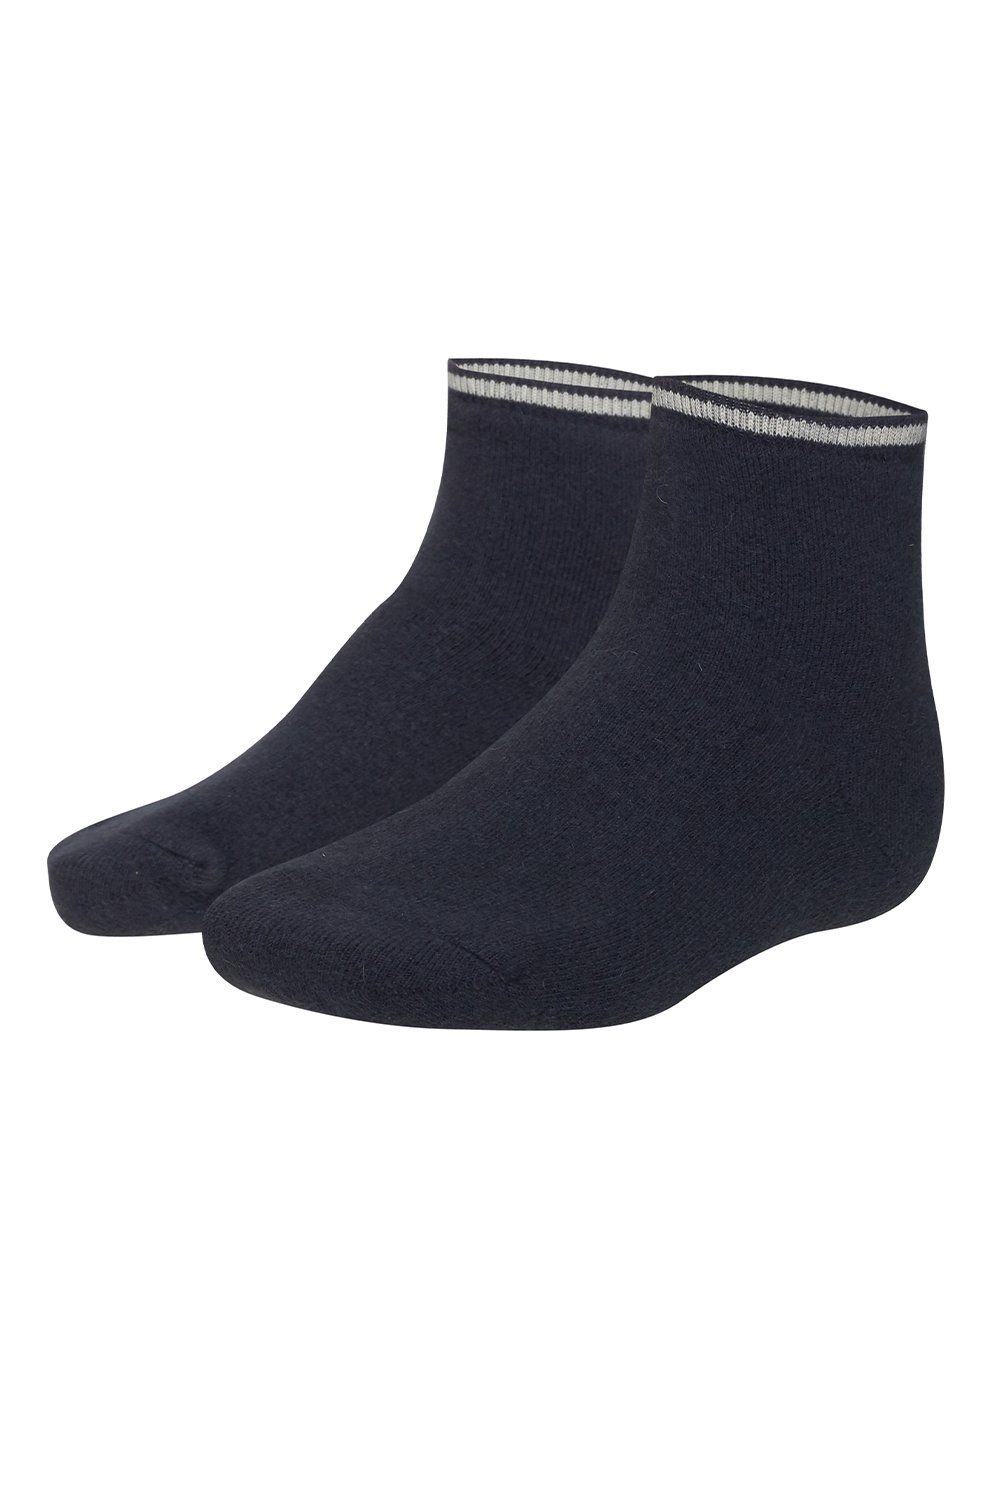 Sangora Socken Fußwärmer s8080166